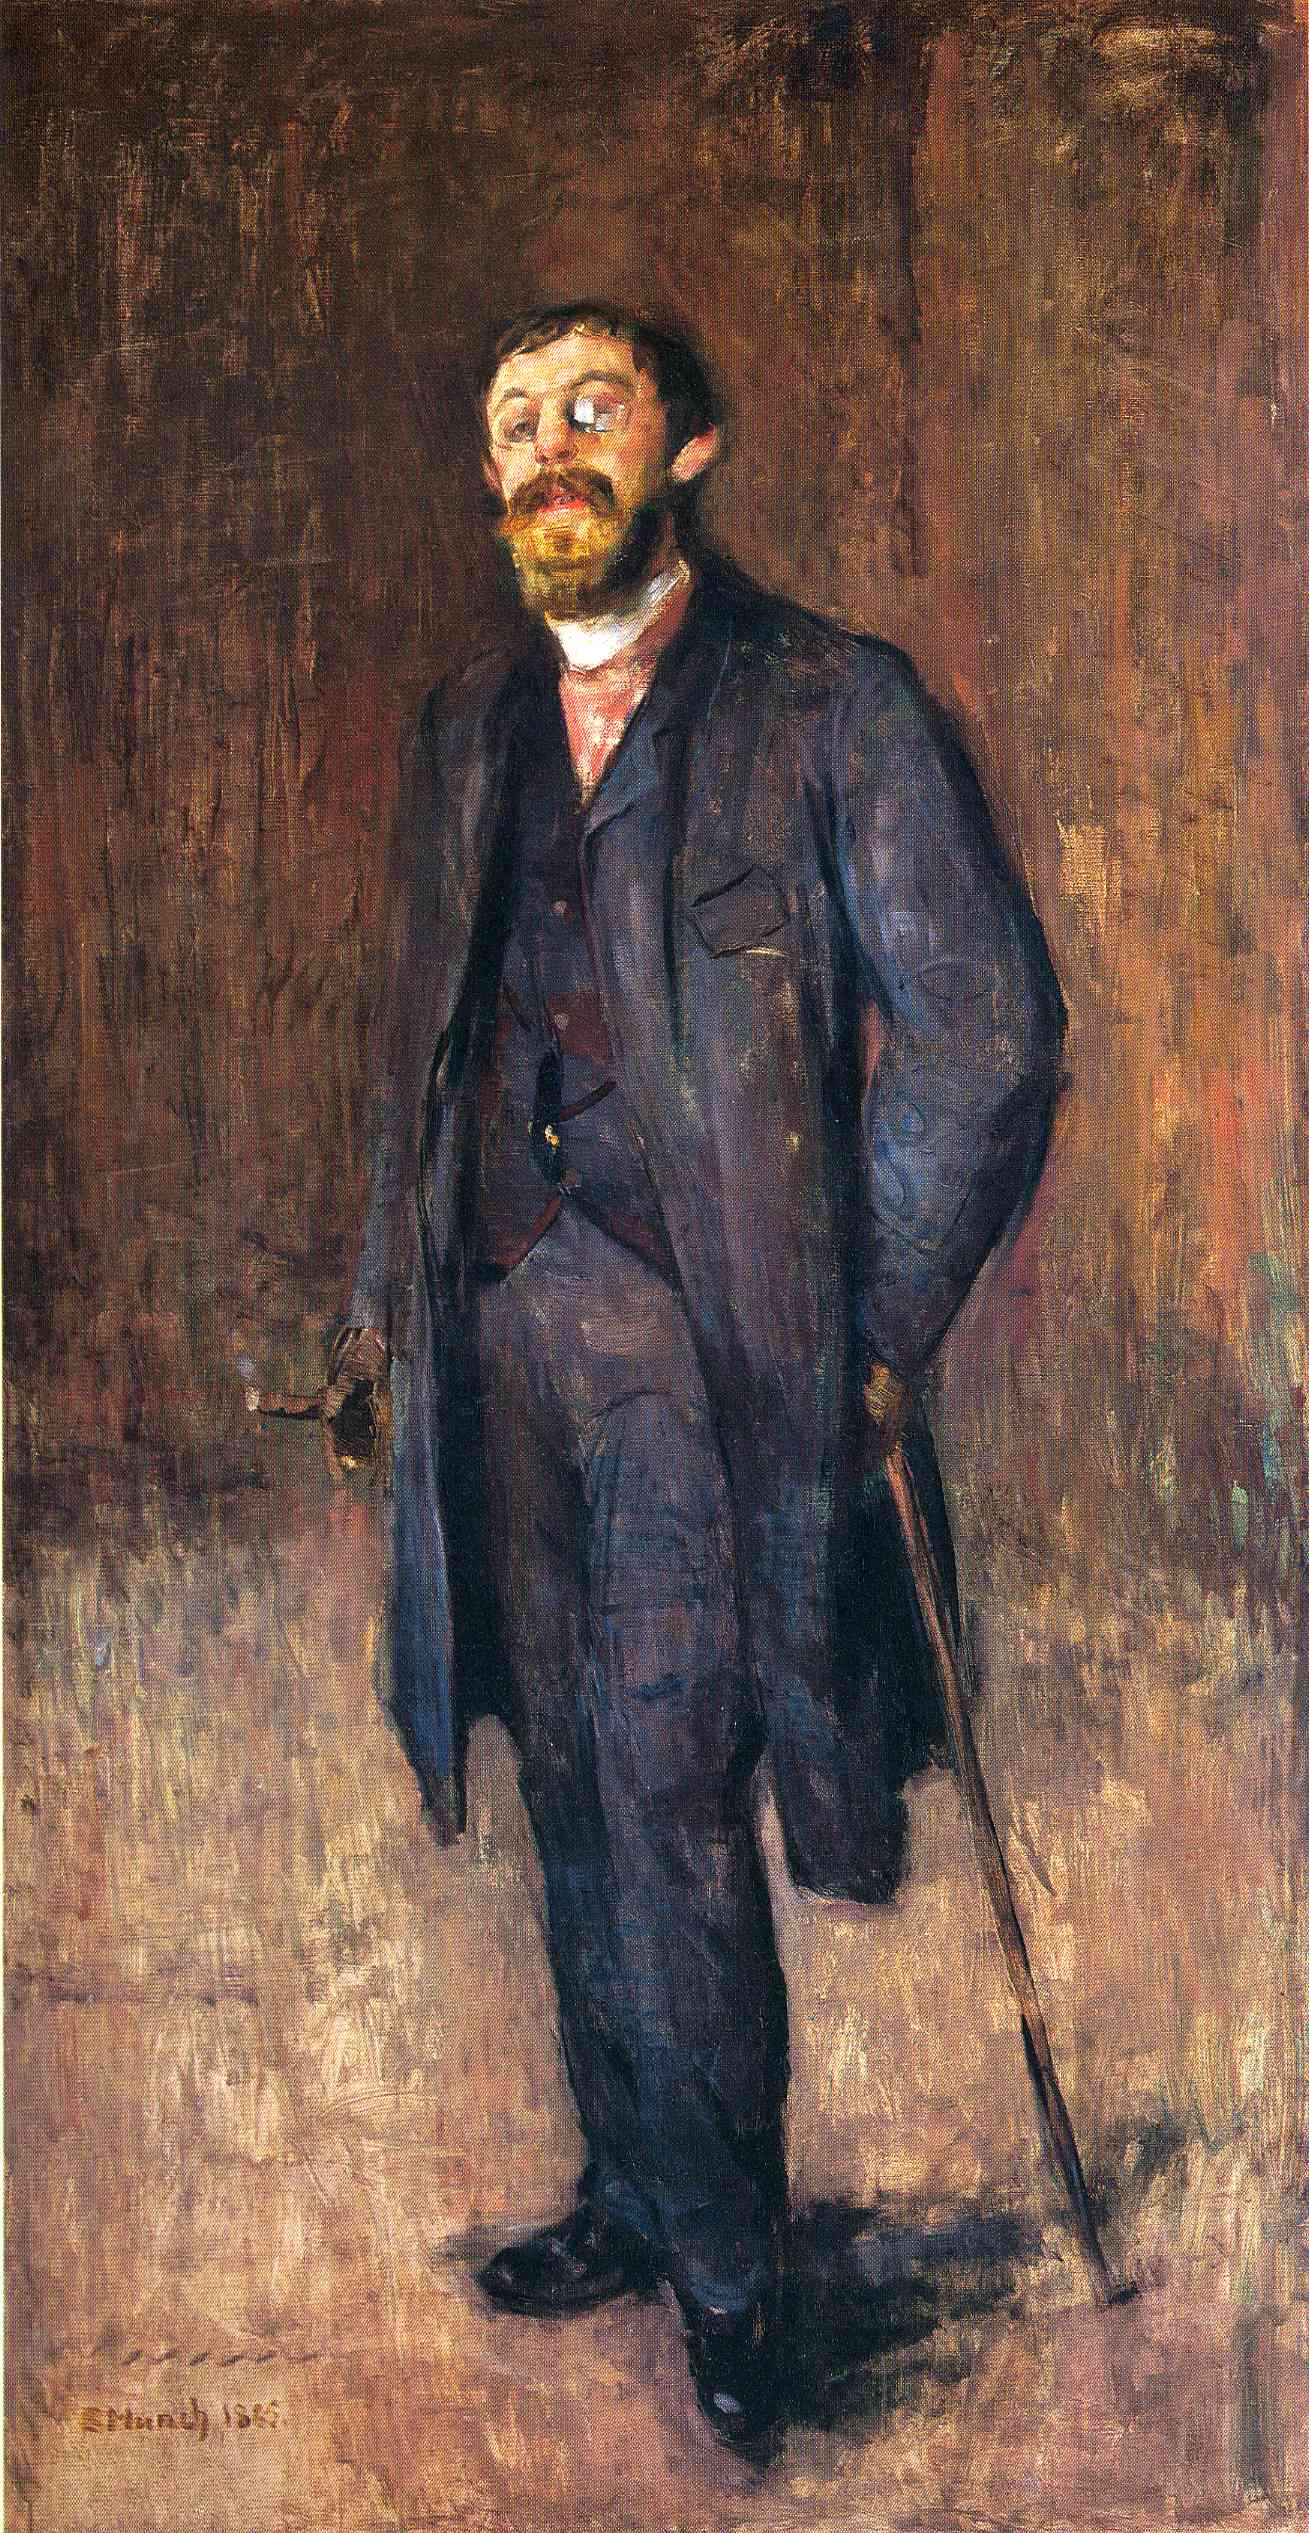 Portrait of the Painter Jensen Hjell, 1885 - Edvard Munch - WikiArt.org